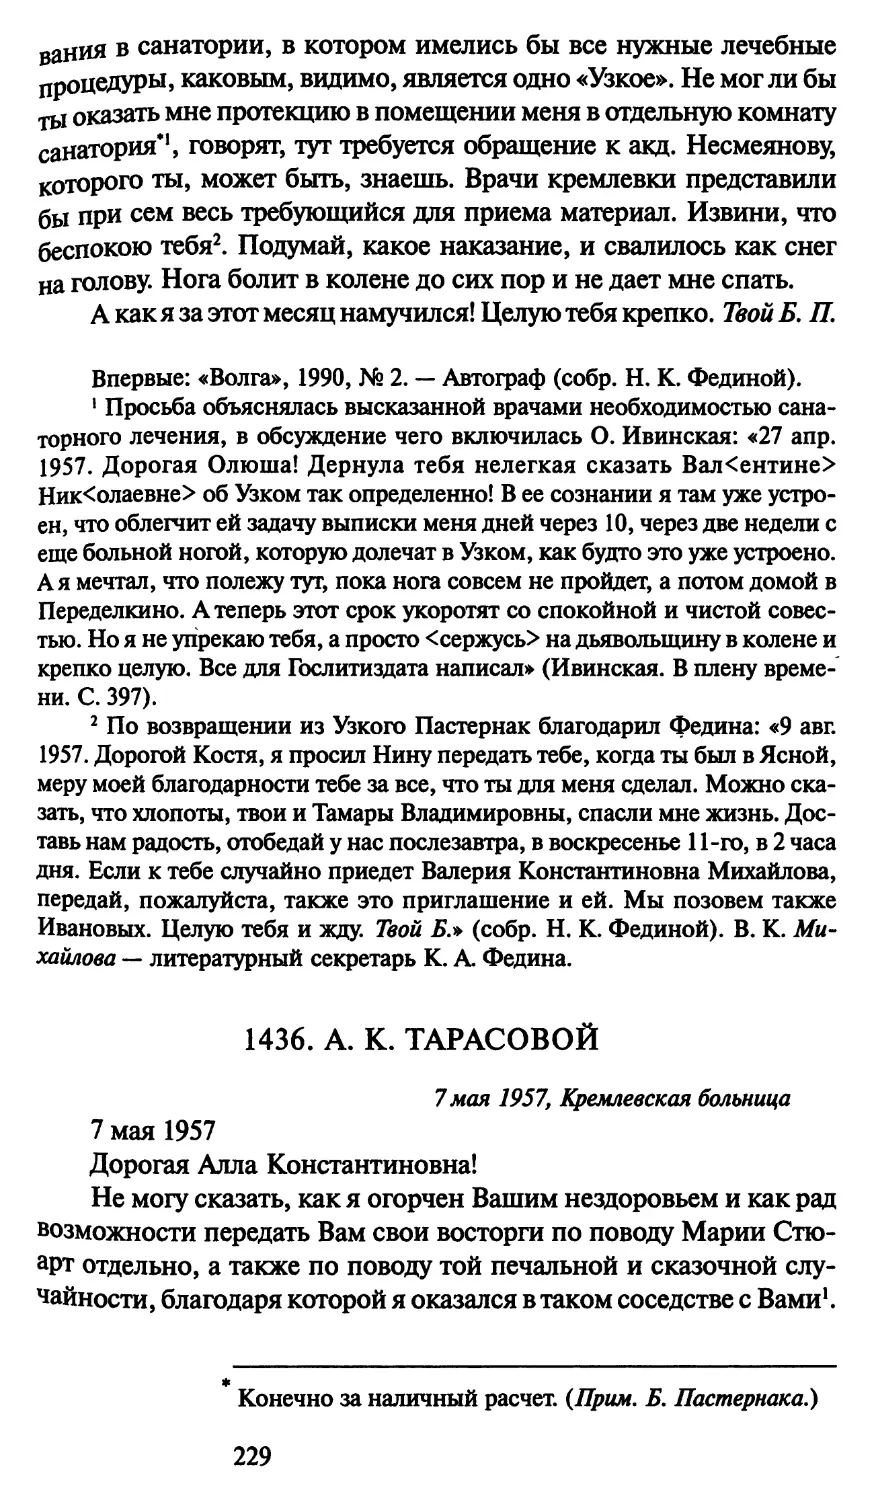 1436. А. К. Тарасовой 7 мая 1957